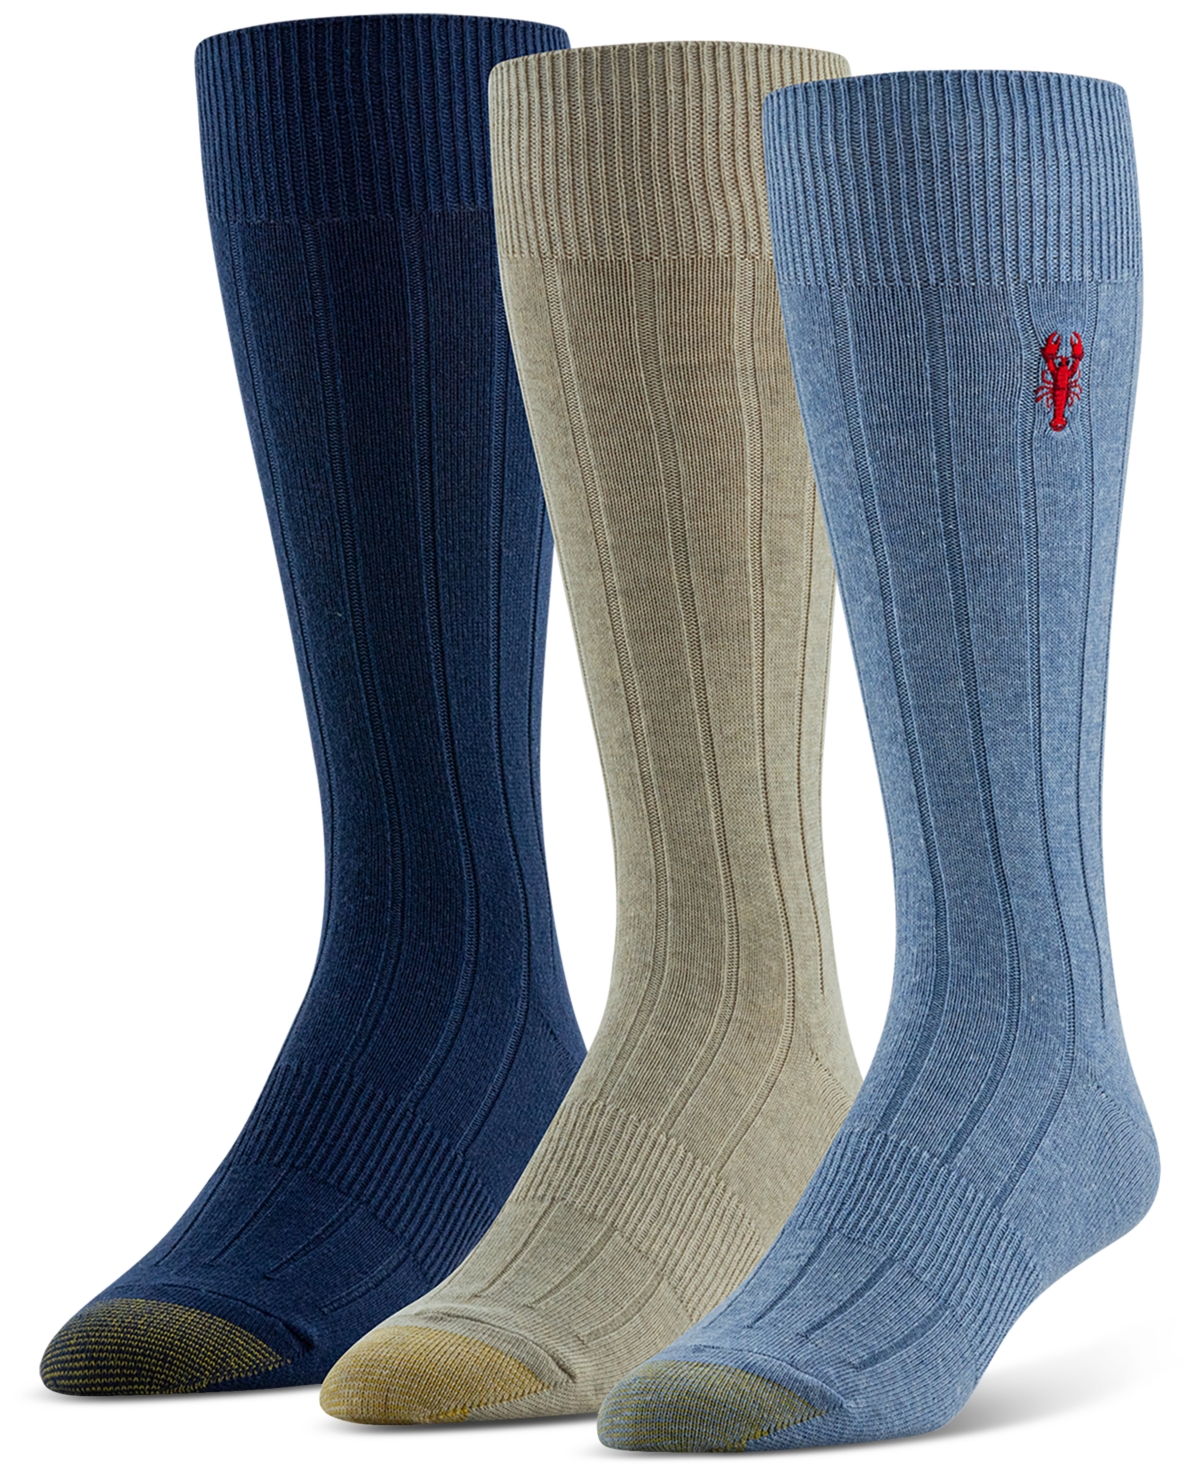 Men's Hampton Embroidered Socks - 3 pk. - Asst